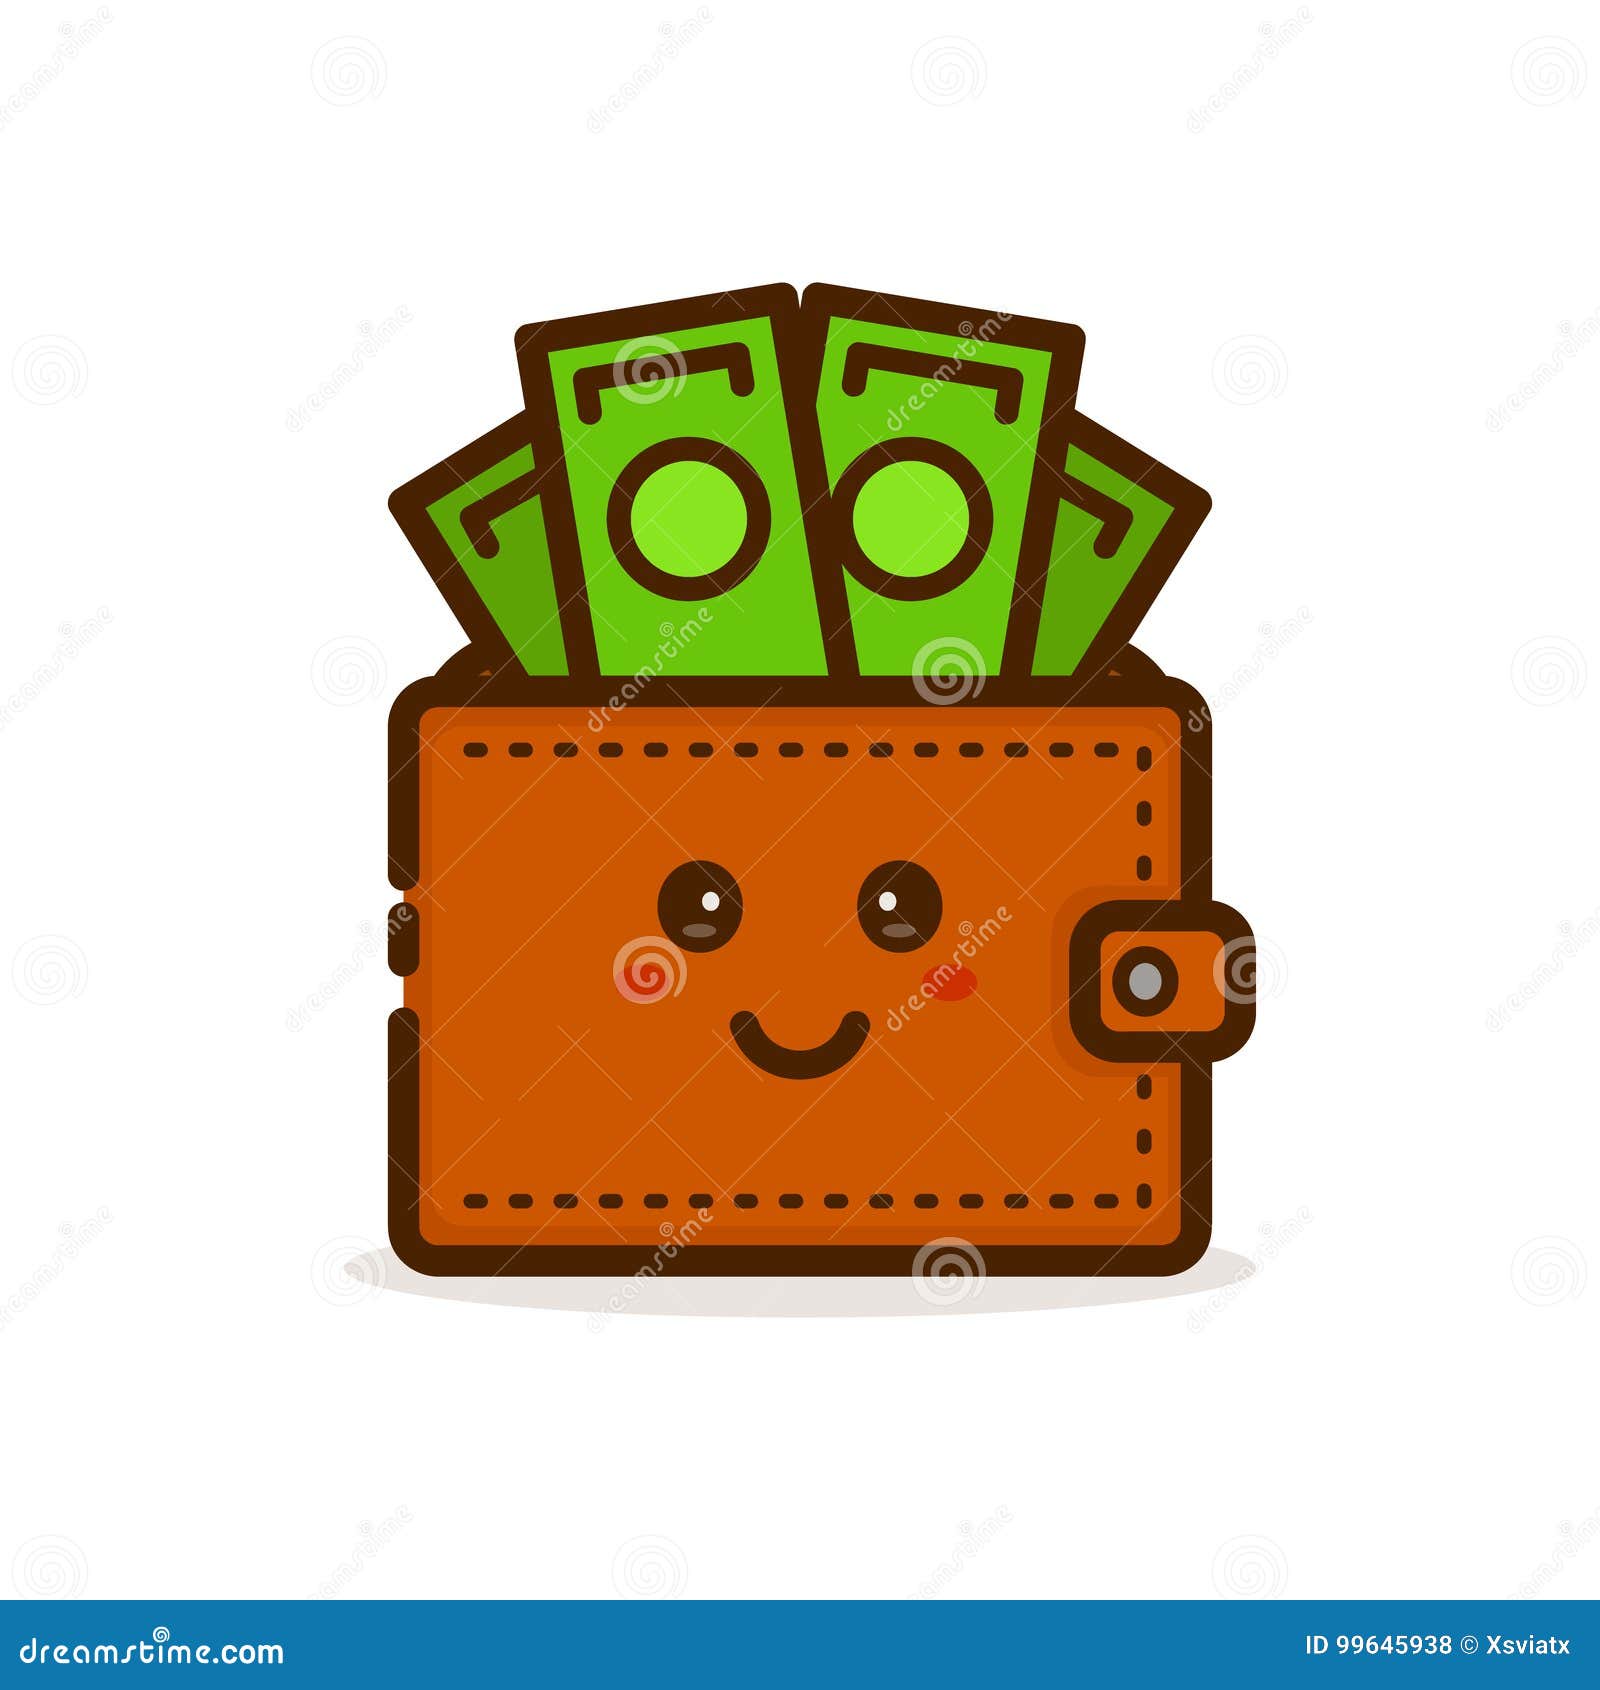 Cute Smiling Happy Money Wallet Vector Stock Vector Illustration - royalty free vector cute smiling happy money wallet vector